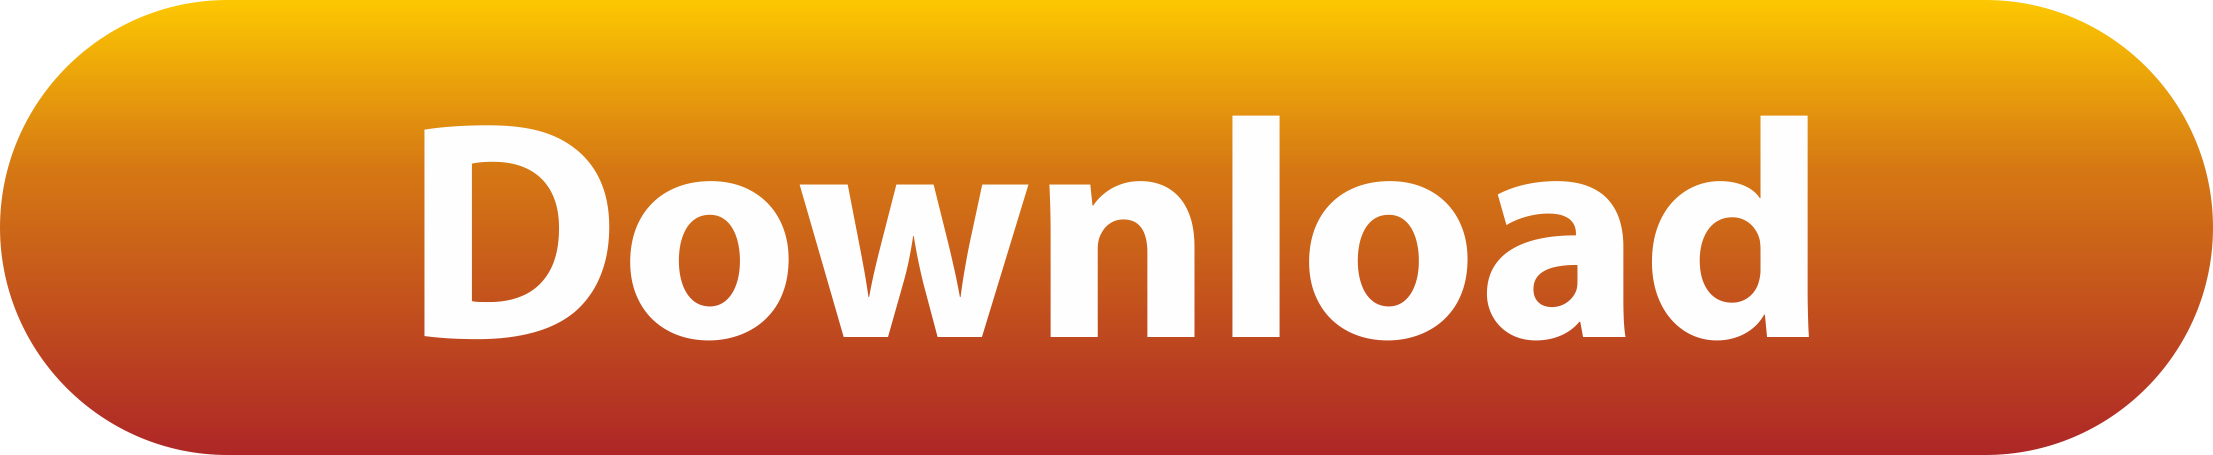 tamil-box-logo-download